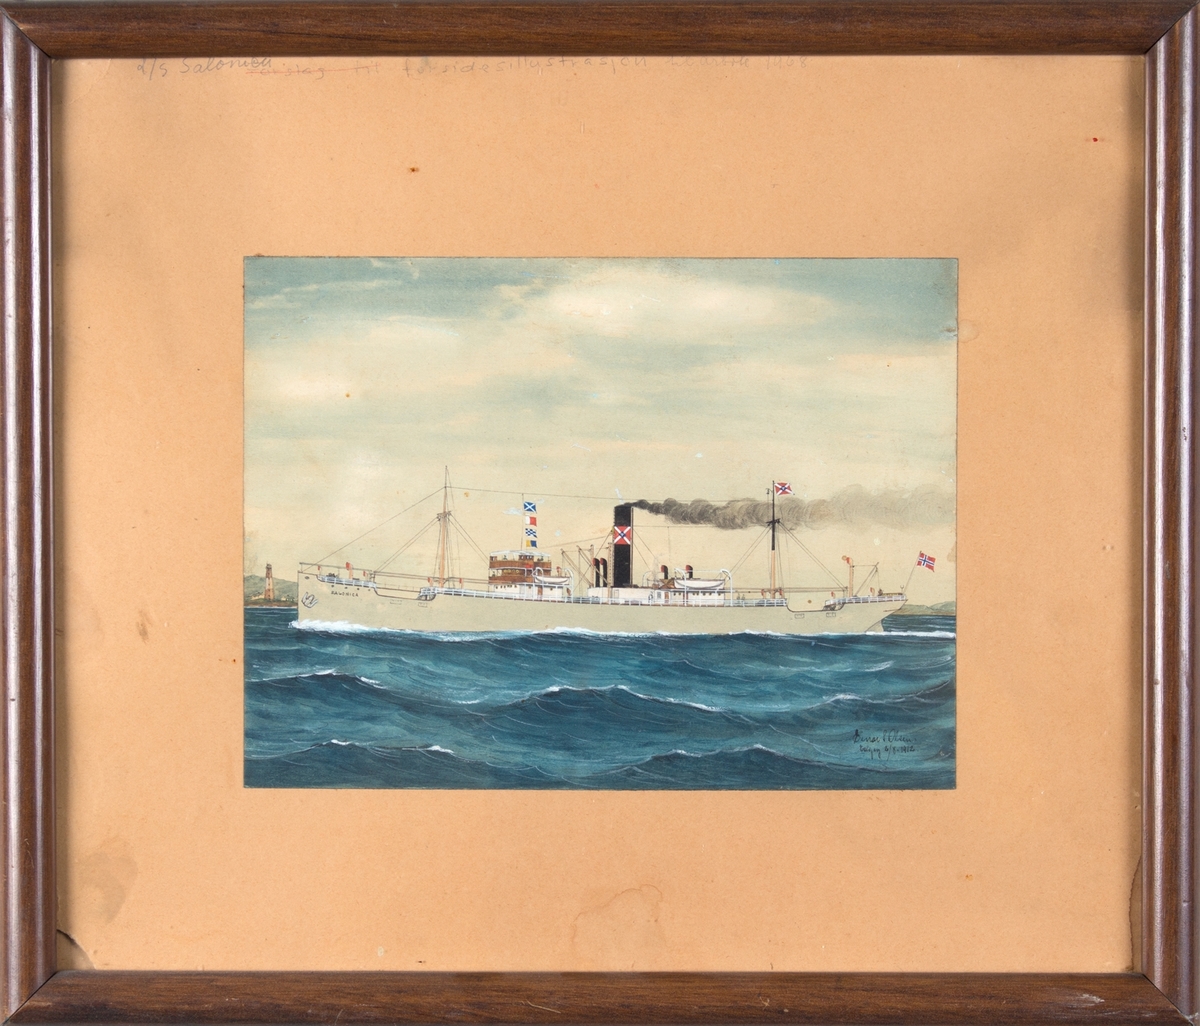 Skipsportrett av DS SALONICA. Til venstre i motivet fyrtårn.